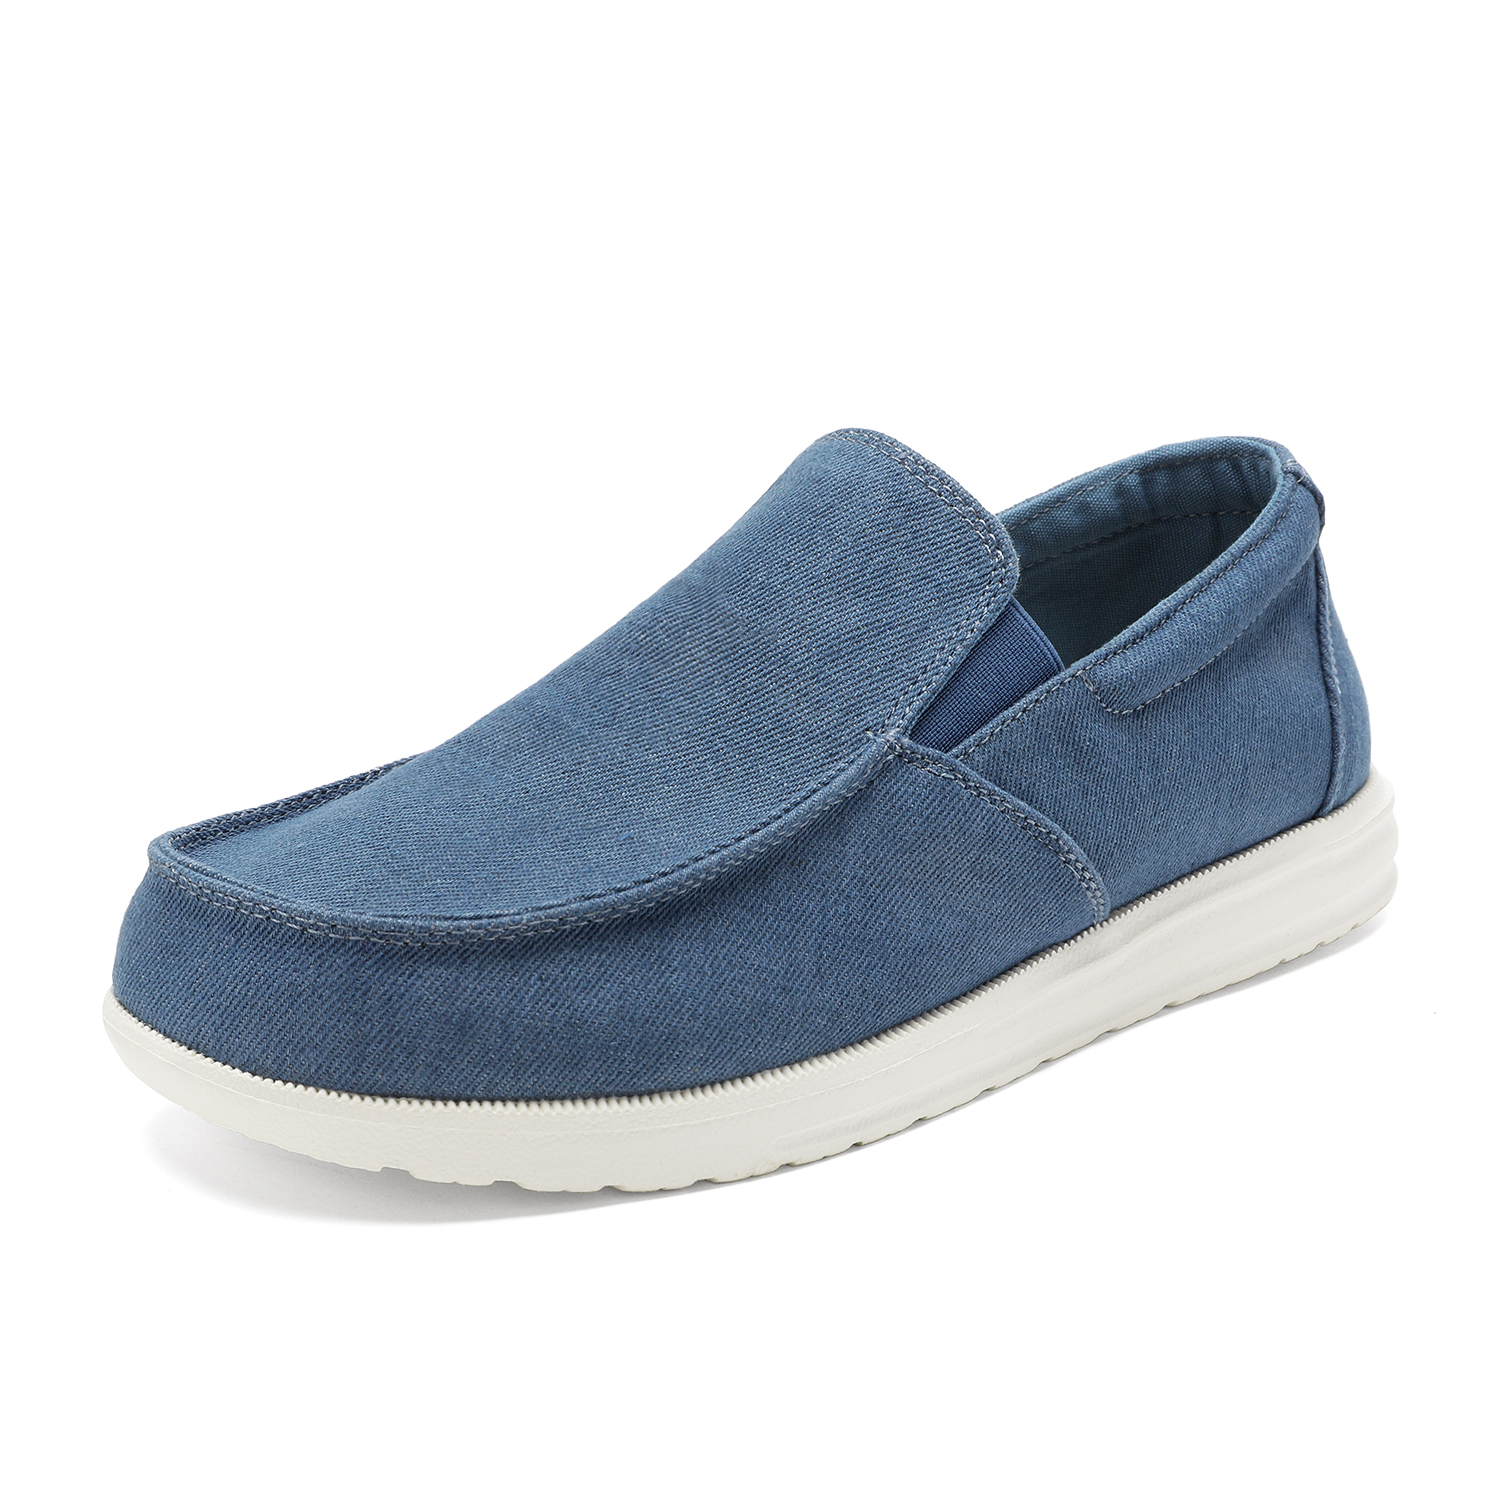 Bruno Marc Men's Slip On Loafer Walking Shoes SUNVENT-01 BLUE/DENIM size 12 - image 1 of 6